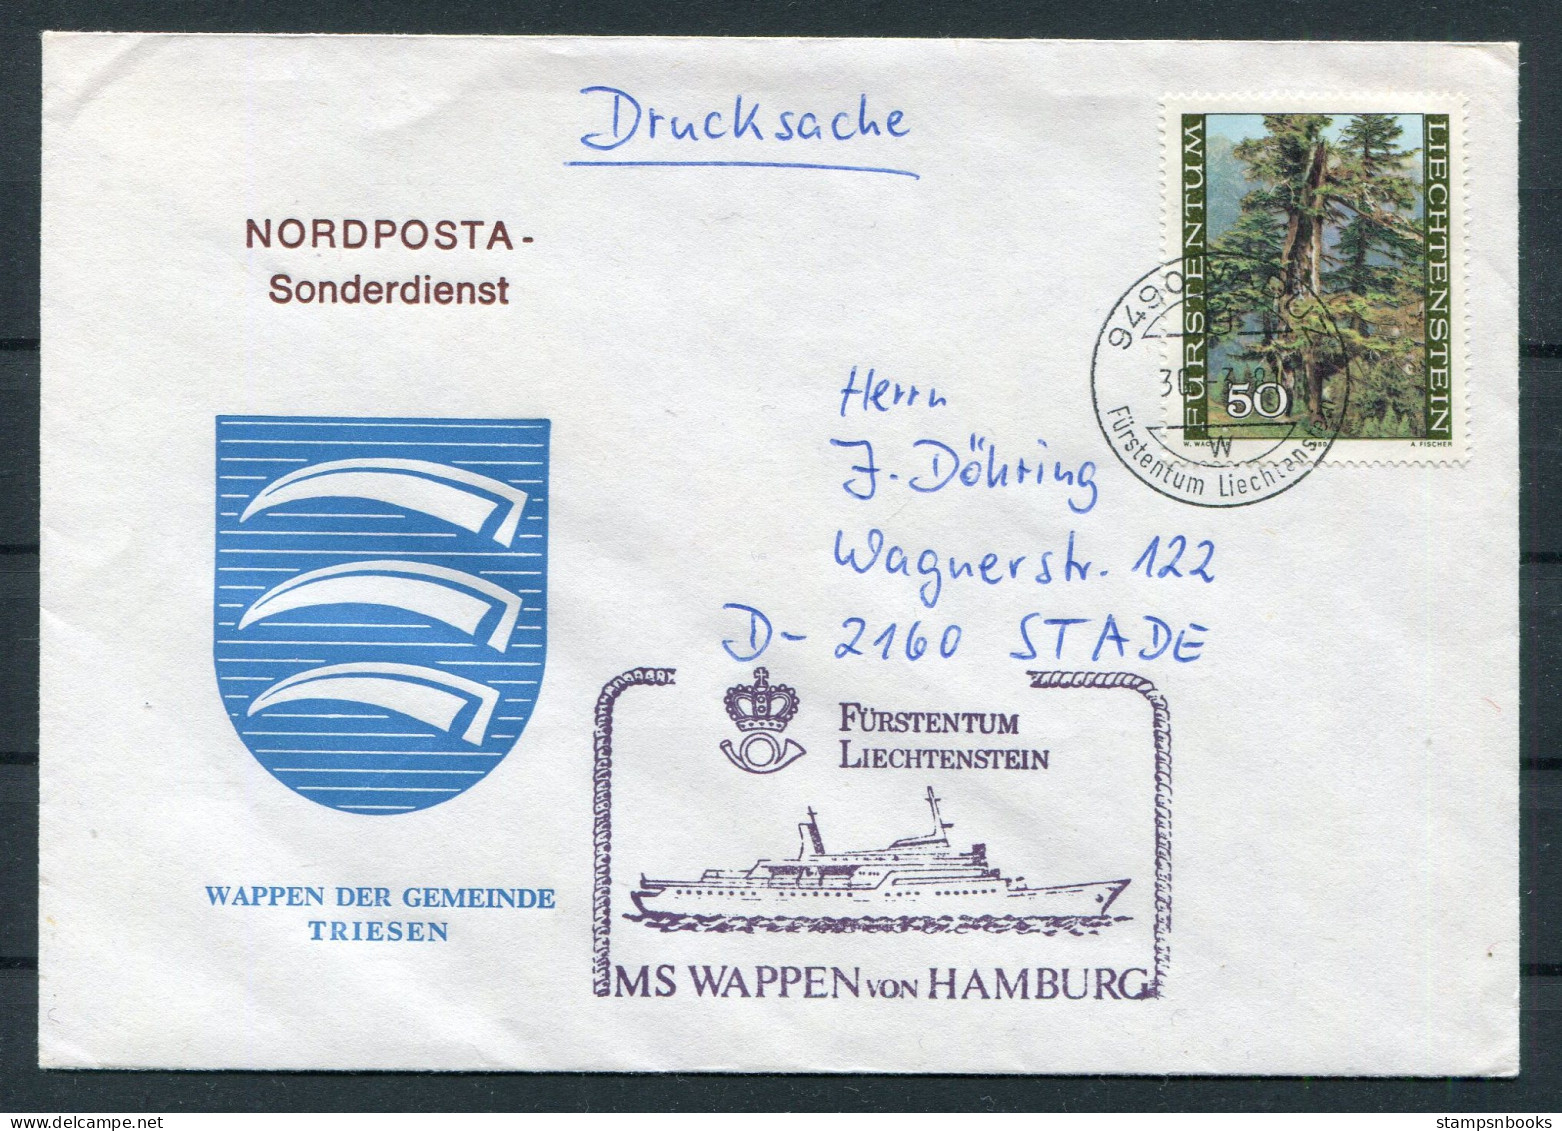 1981 Liechtenstein Vaduz Trees MS WAPPEN VON HAMBURG Ship Cover. Wappen Der Gemeinde TRIESEN Coat-of-Arms - Lettres & Documents